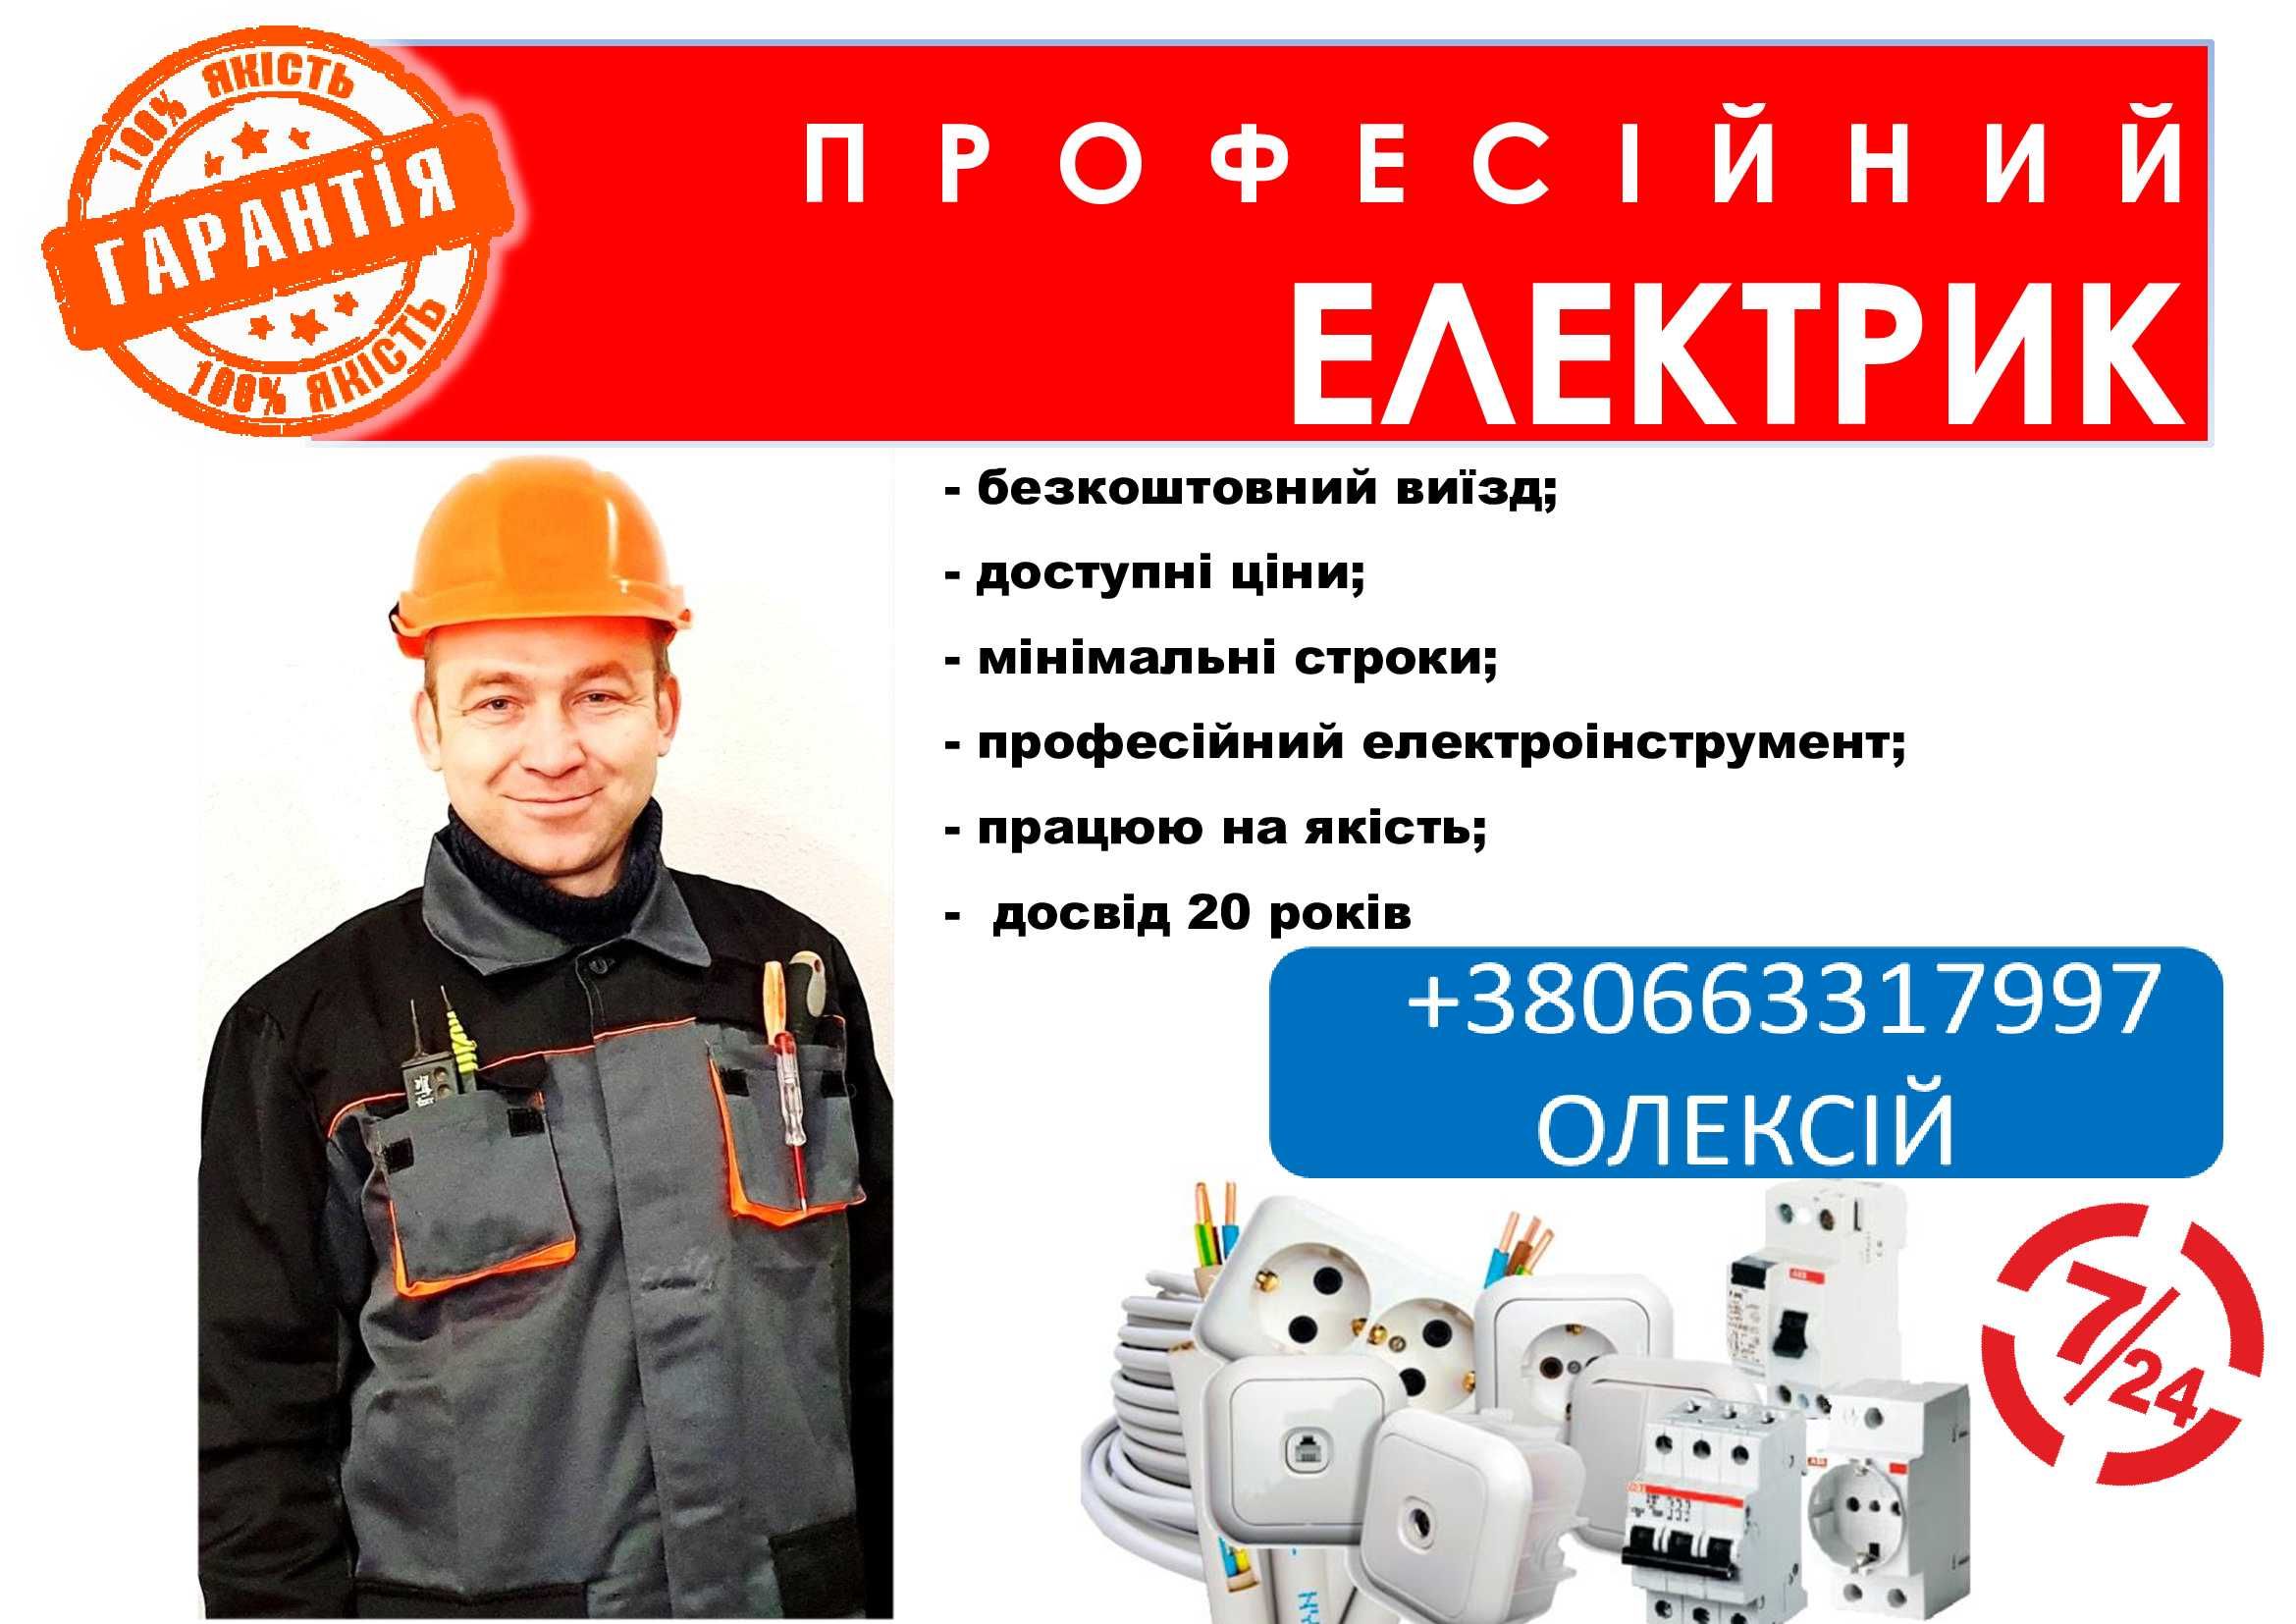 Послуги електрика у Кропивницькому та по області. Тел. +380663317997